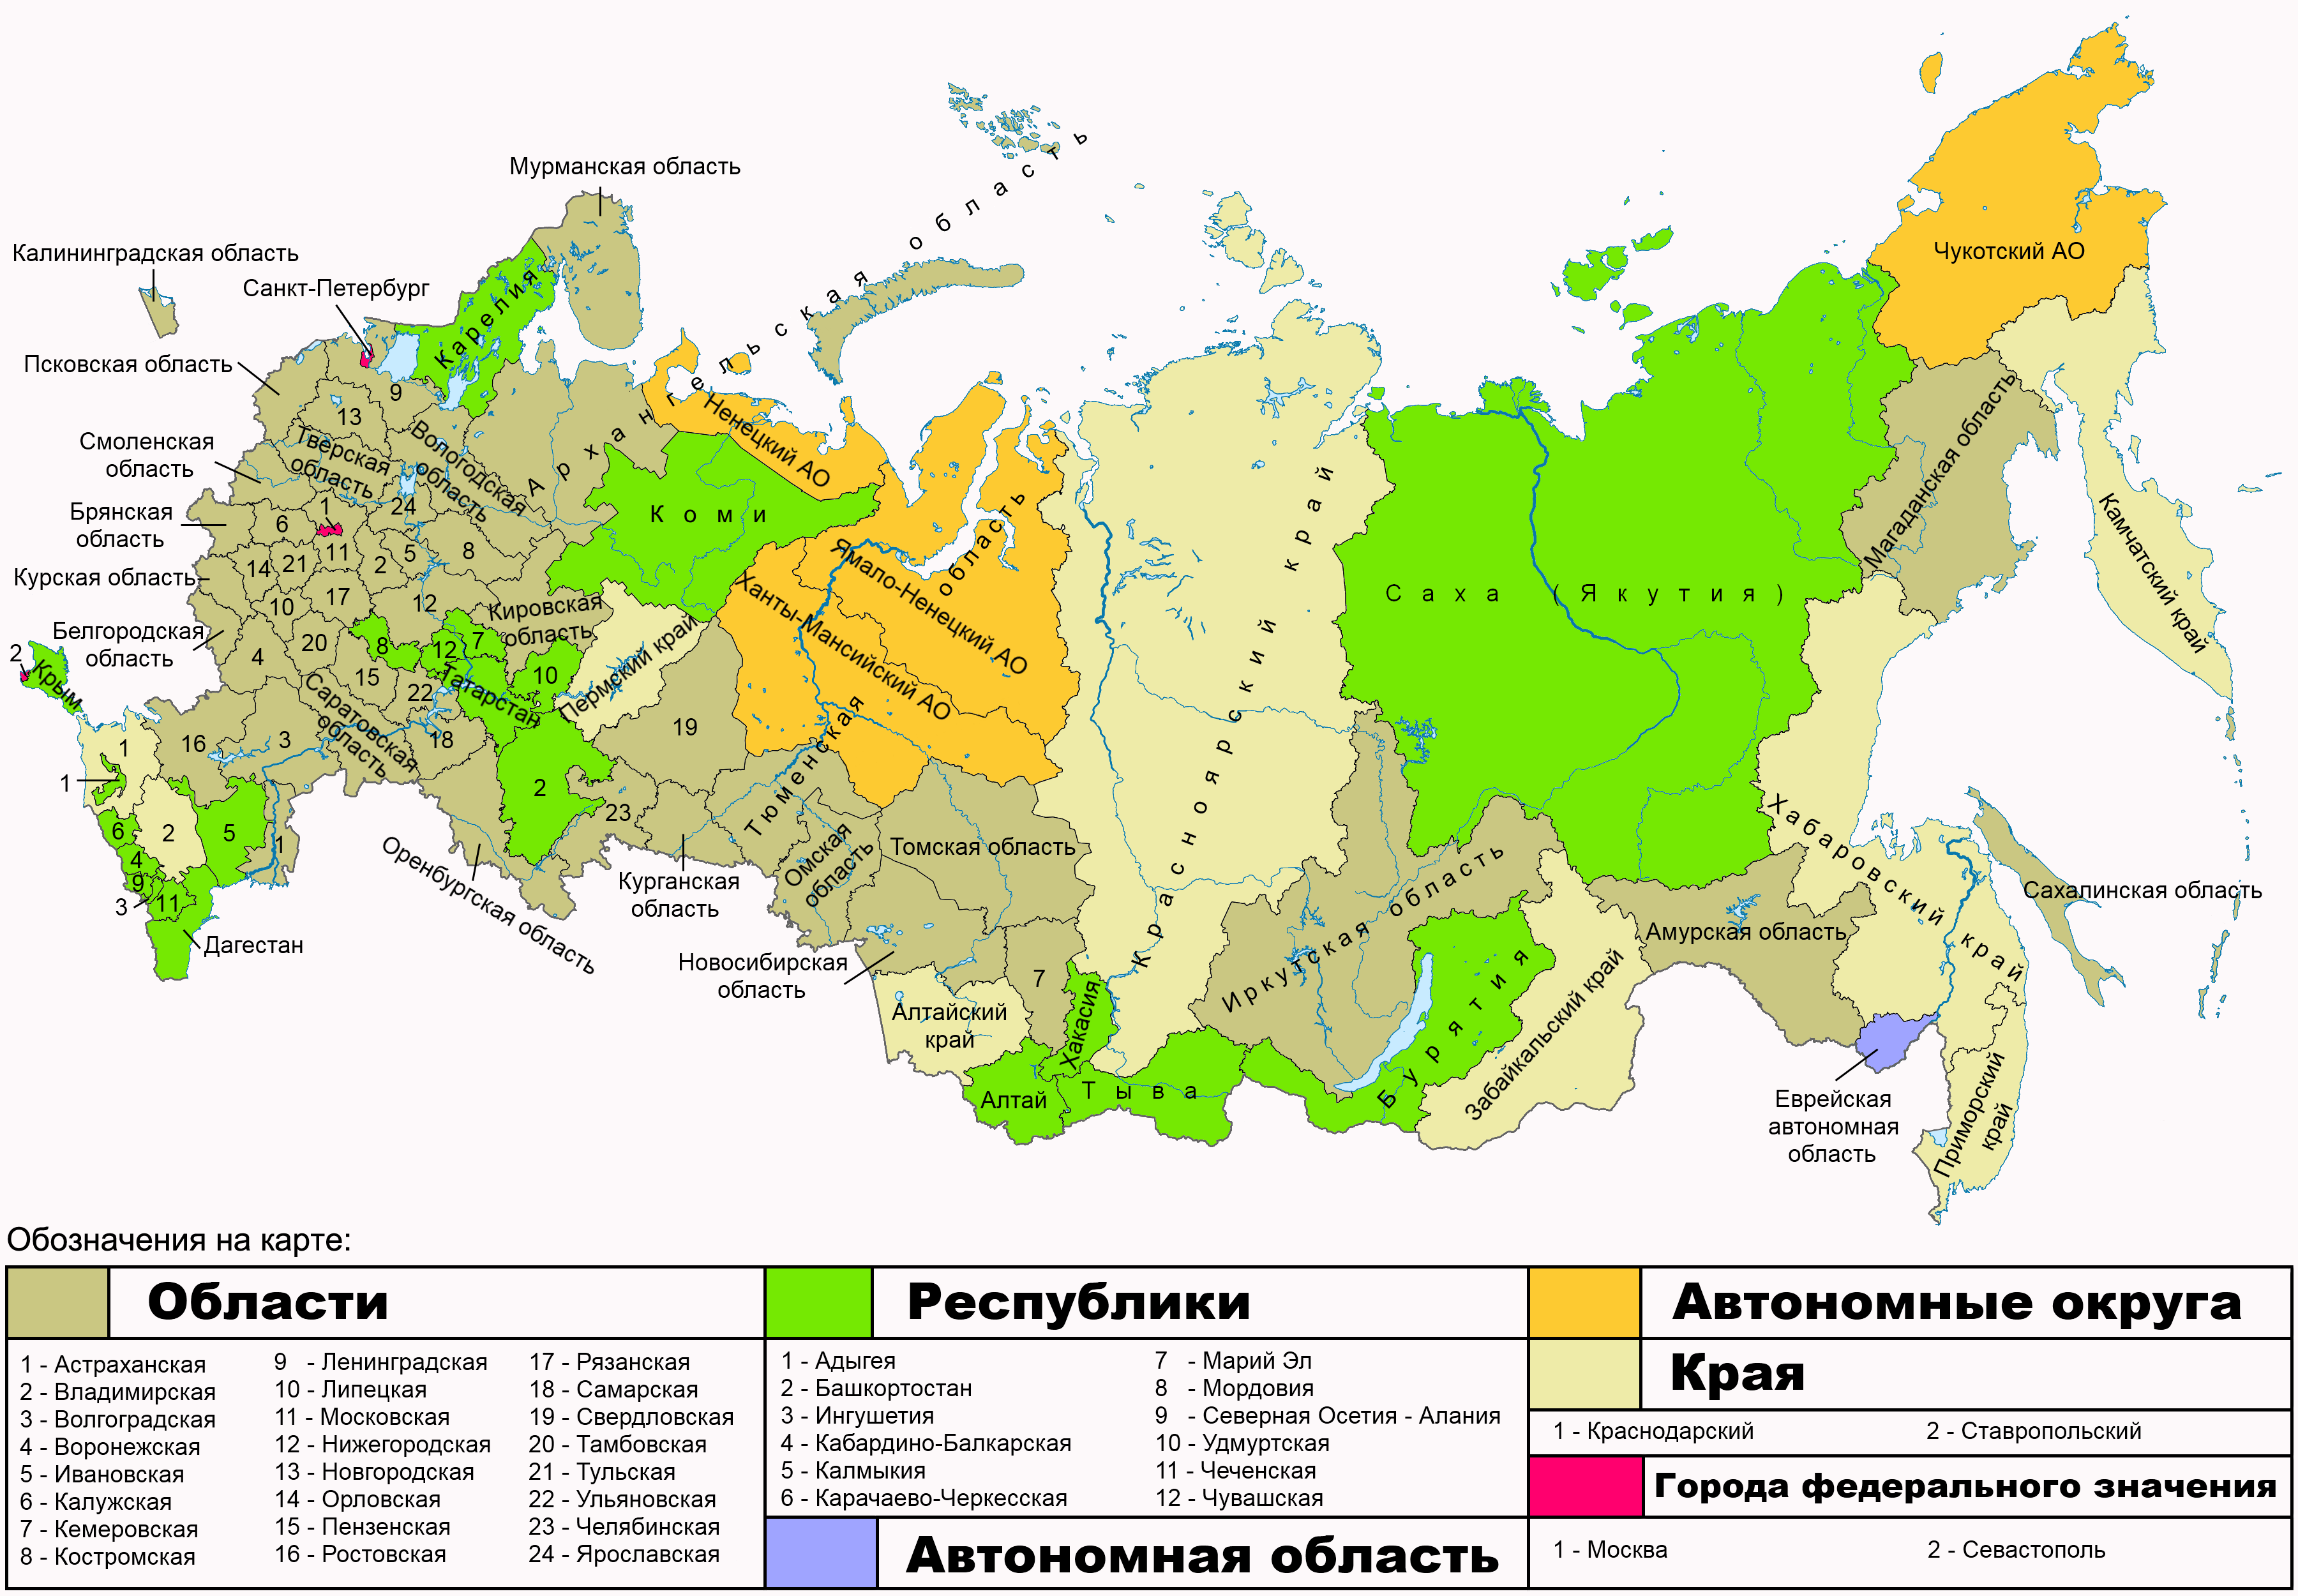 Округа субъектов Российской Федерации